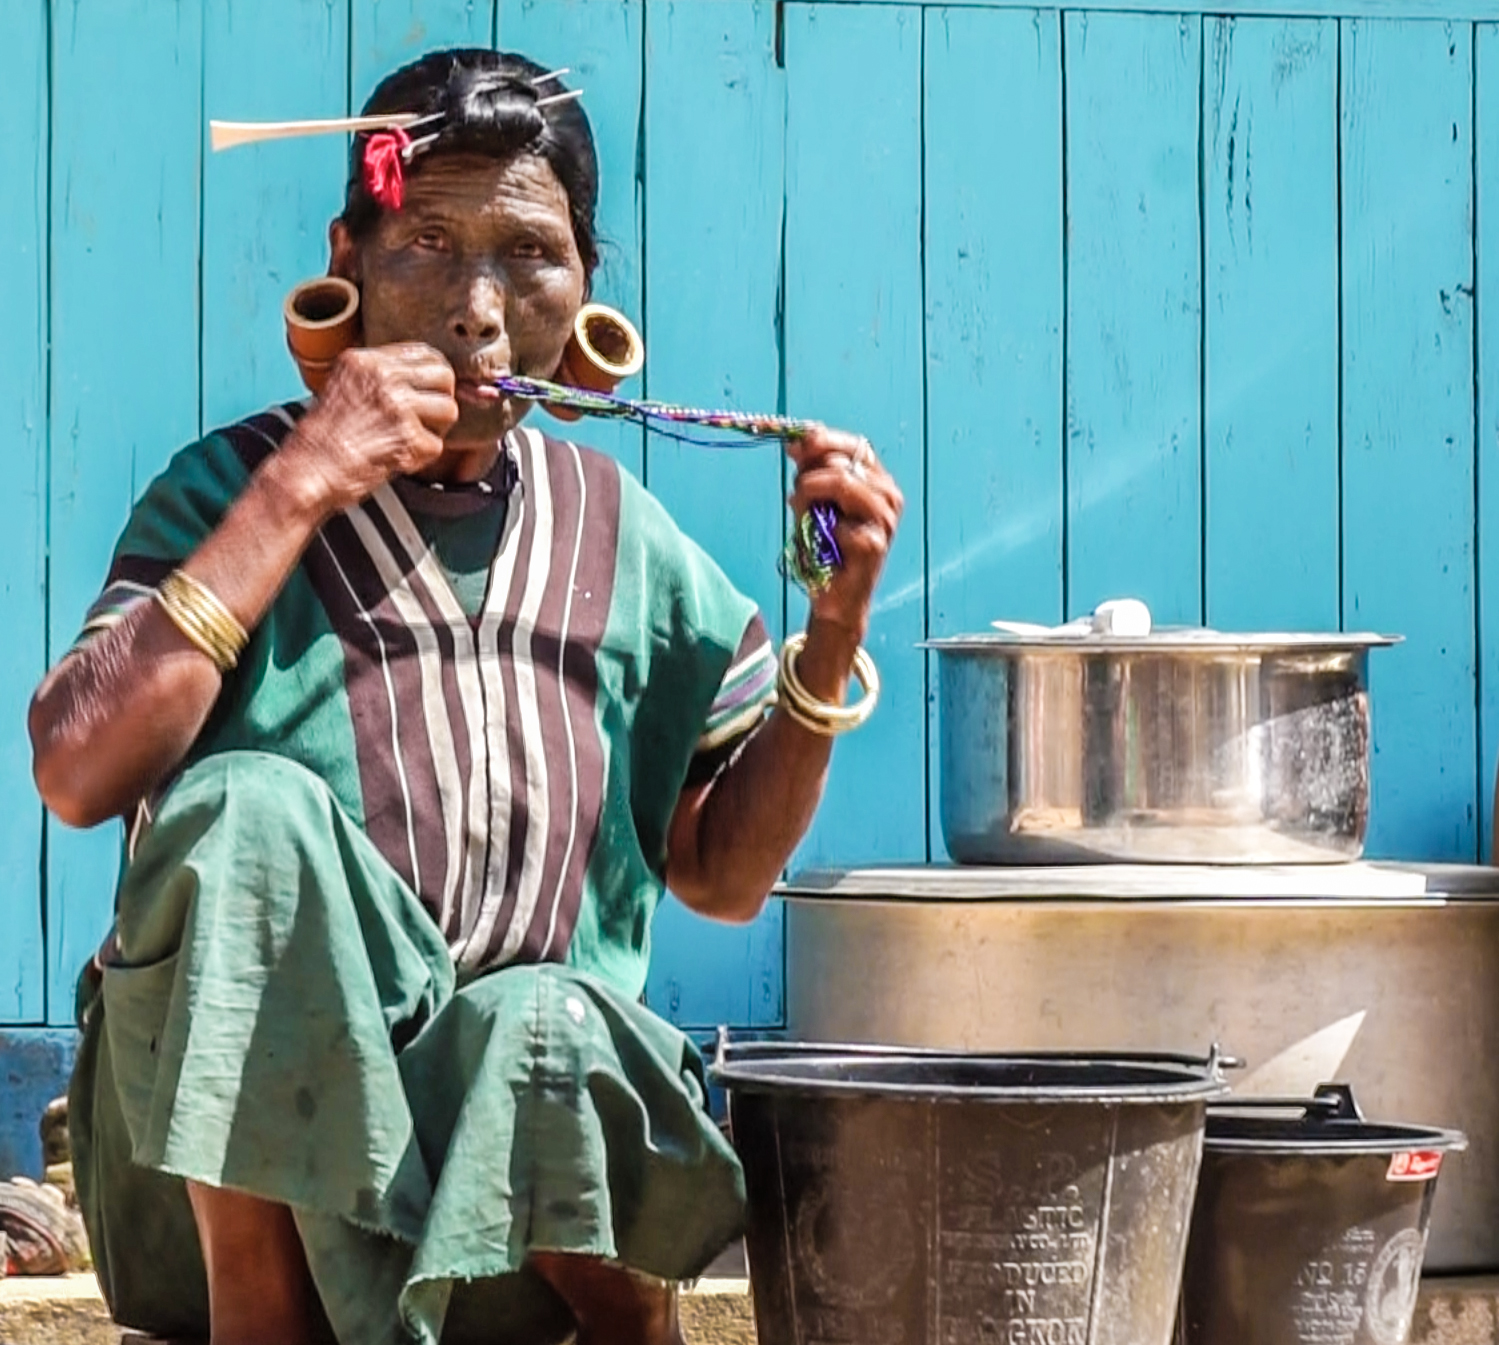 Bà Daw Hang Pai (70 tuổi, người Uppriu) đang dùng miệng để vệ sinh bộ trang sức truyền thống của mình ở công đoạn cuối sau khi đã làm sạch.